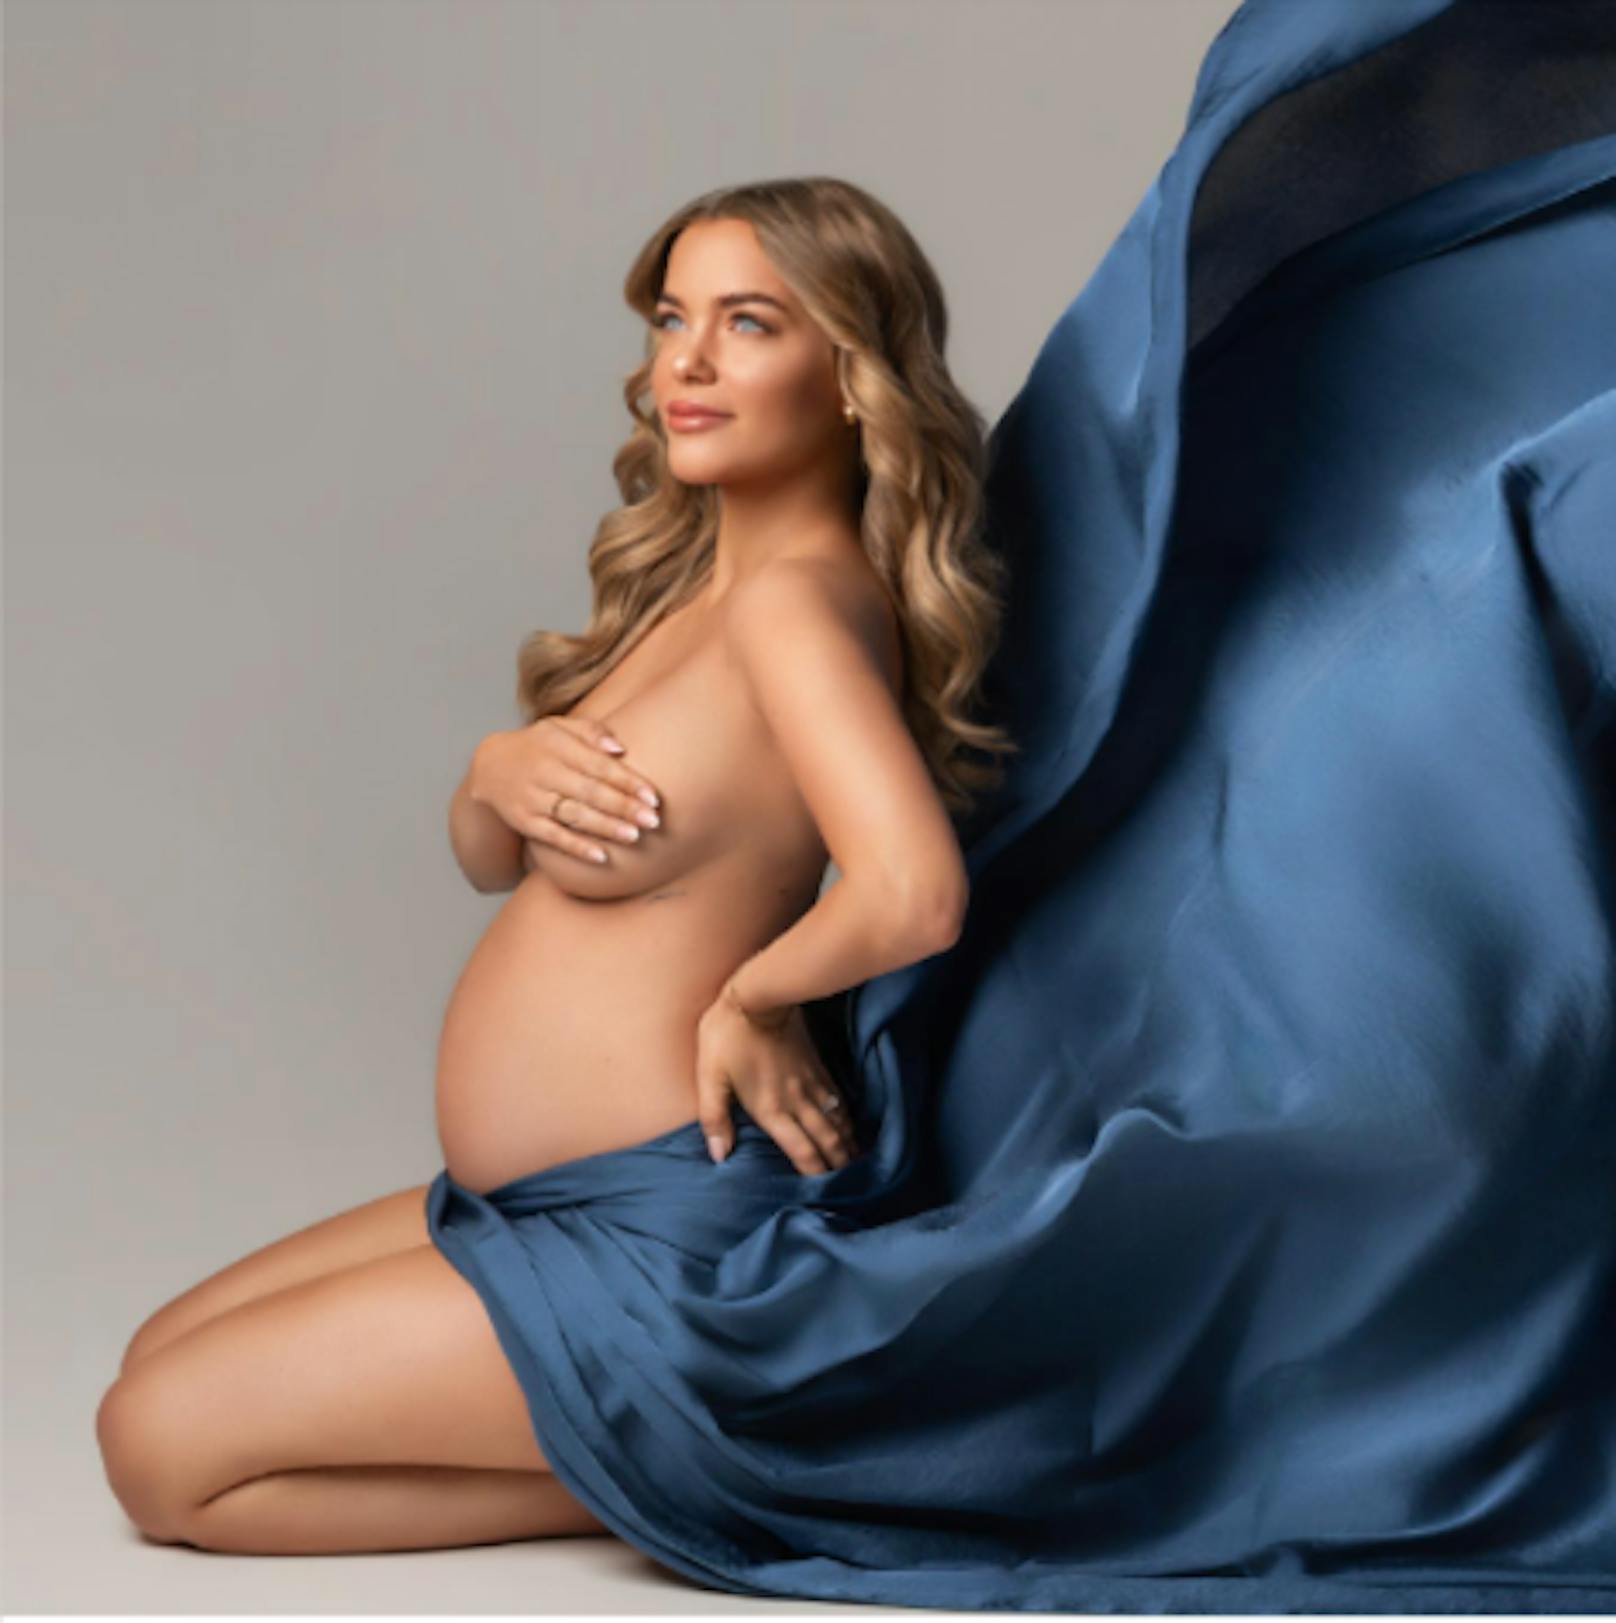 Laura Maria Rypa ist hochschwanger und schreibt, dass sie sich 9 Monate darauf vorbereite, ein Leben lang zu lieben.